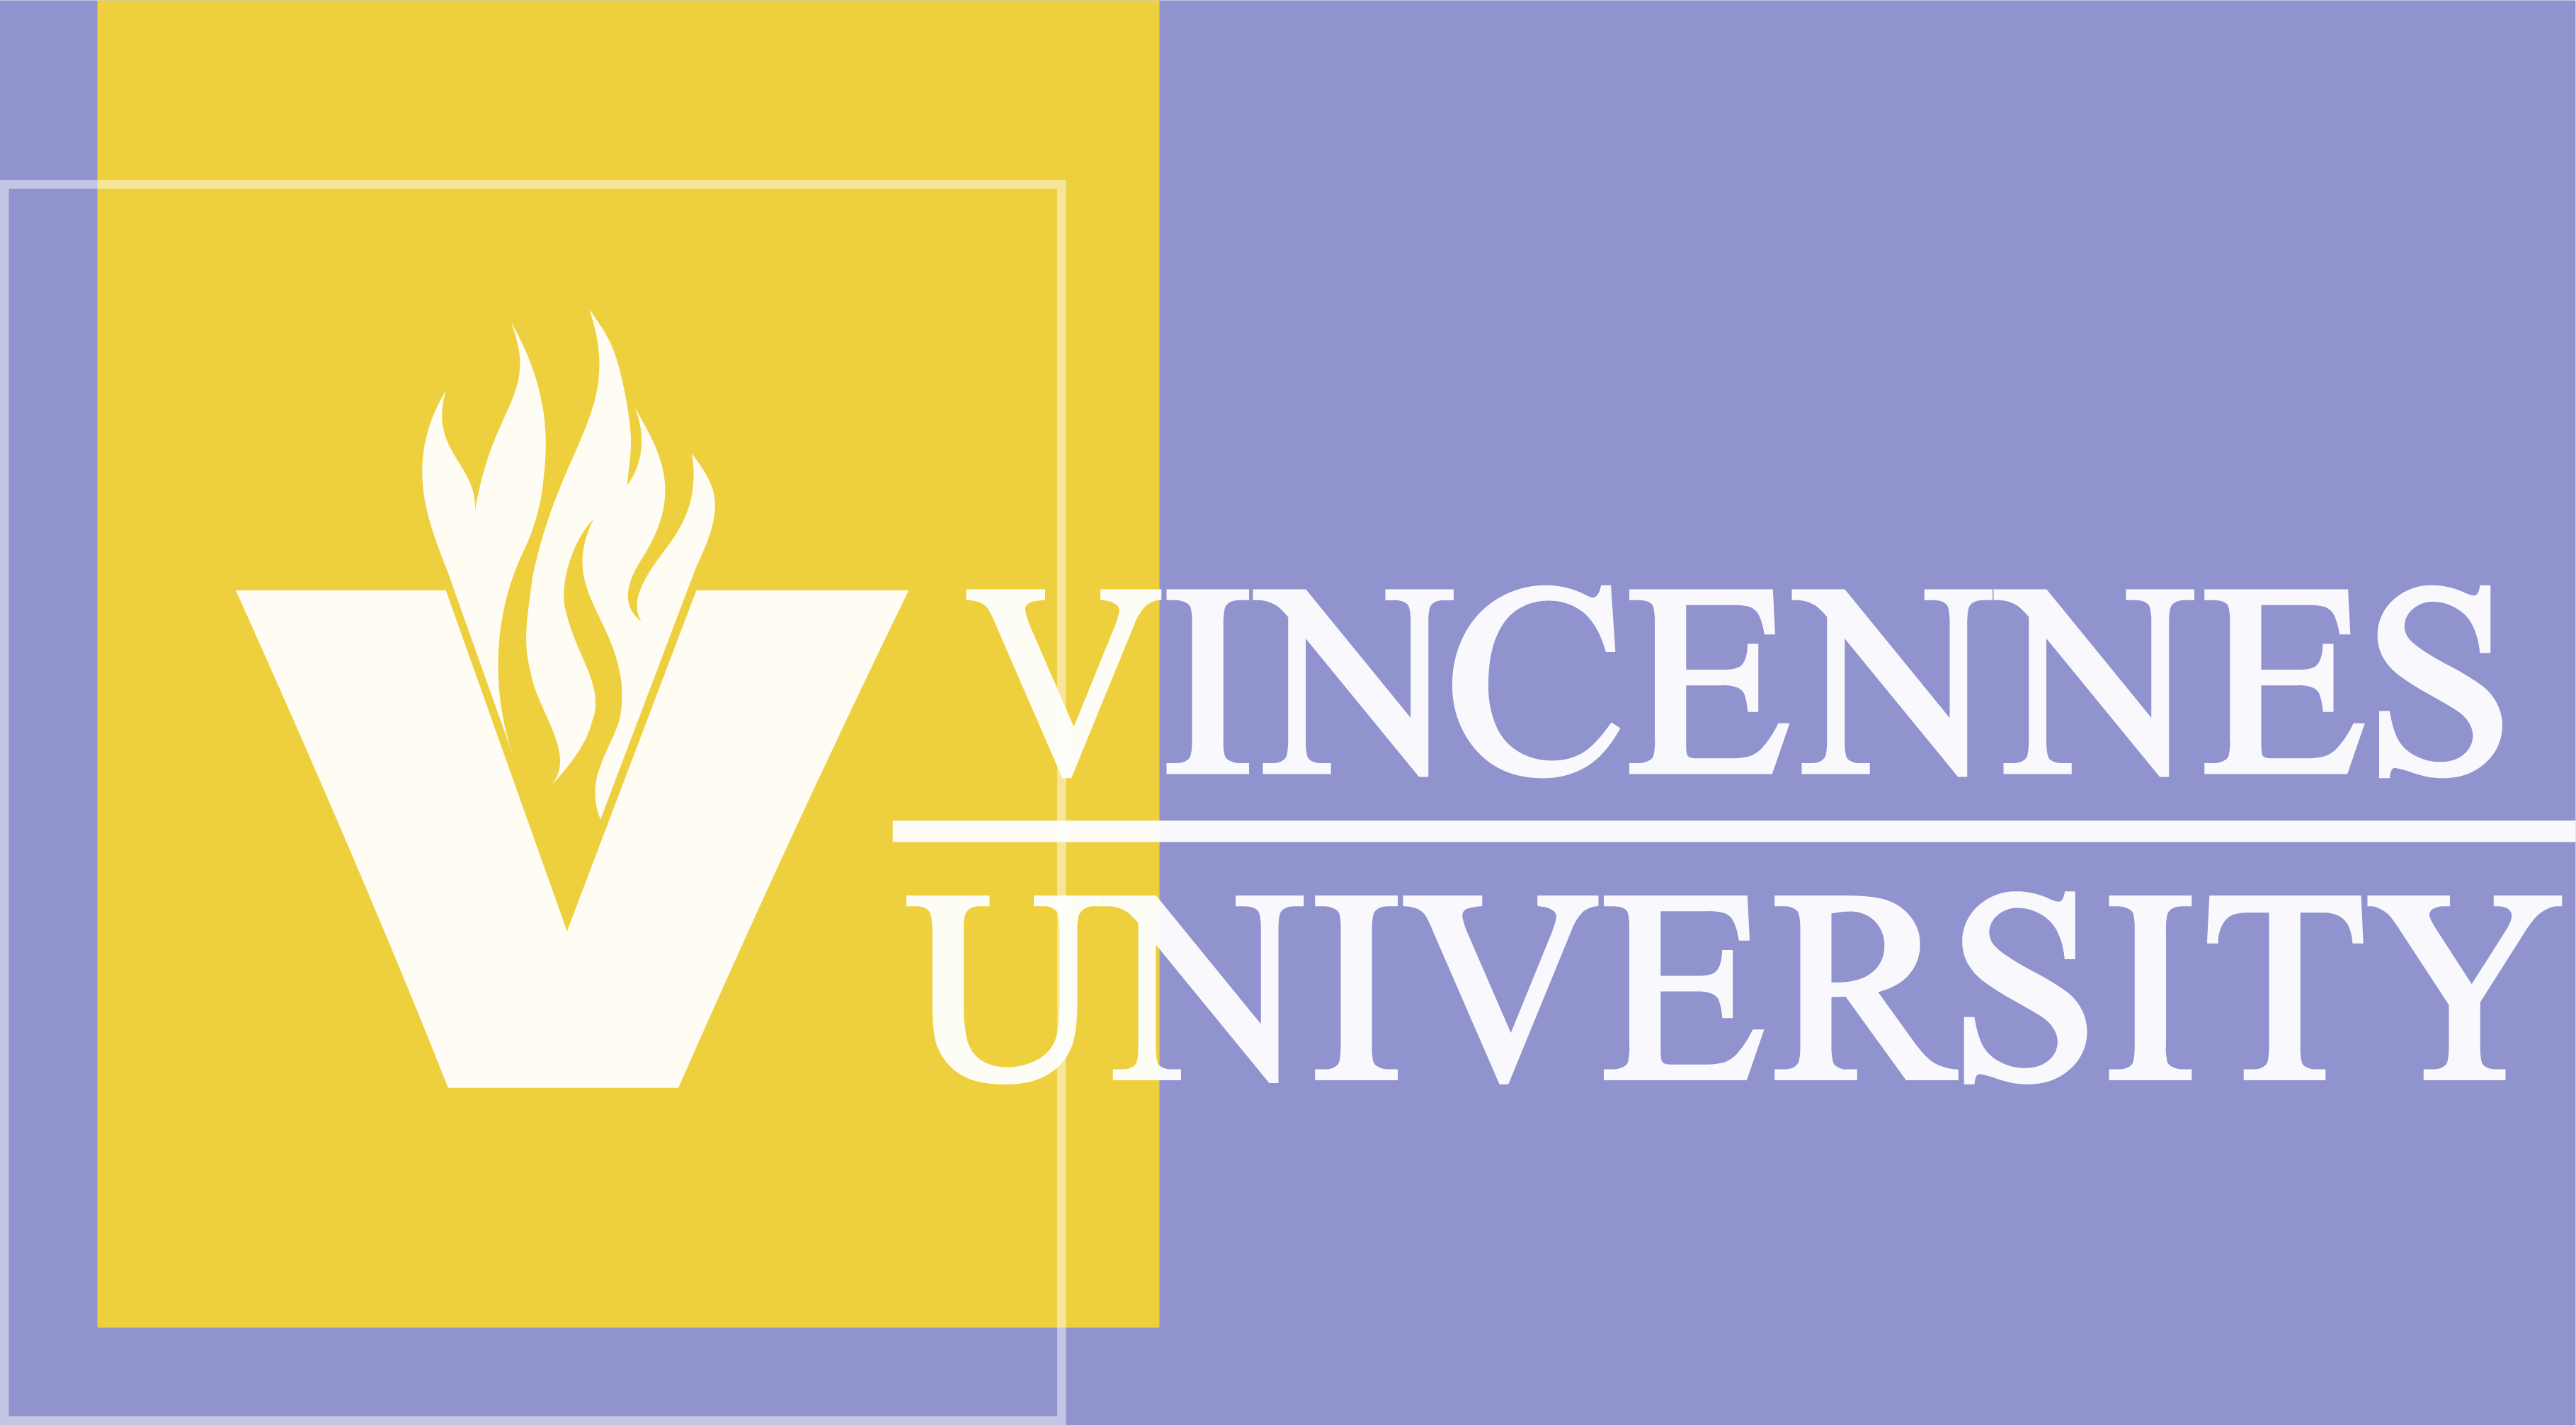 Vincennes University logo on a lavender background